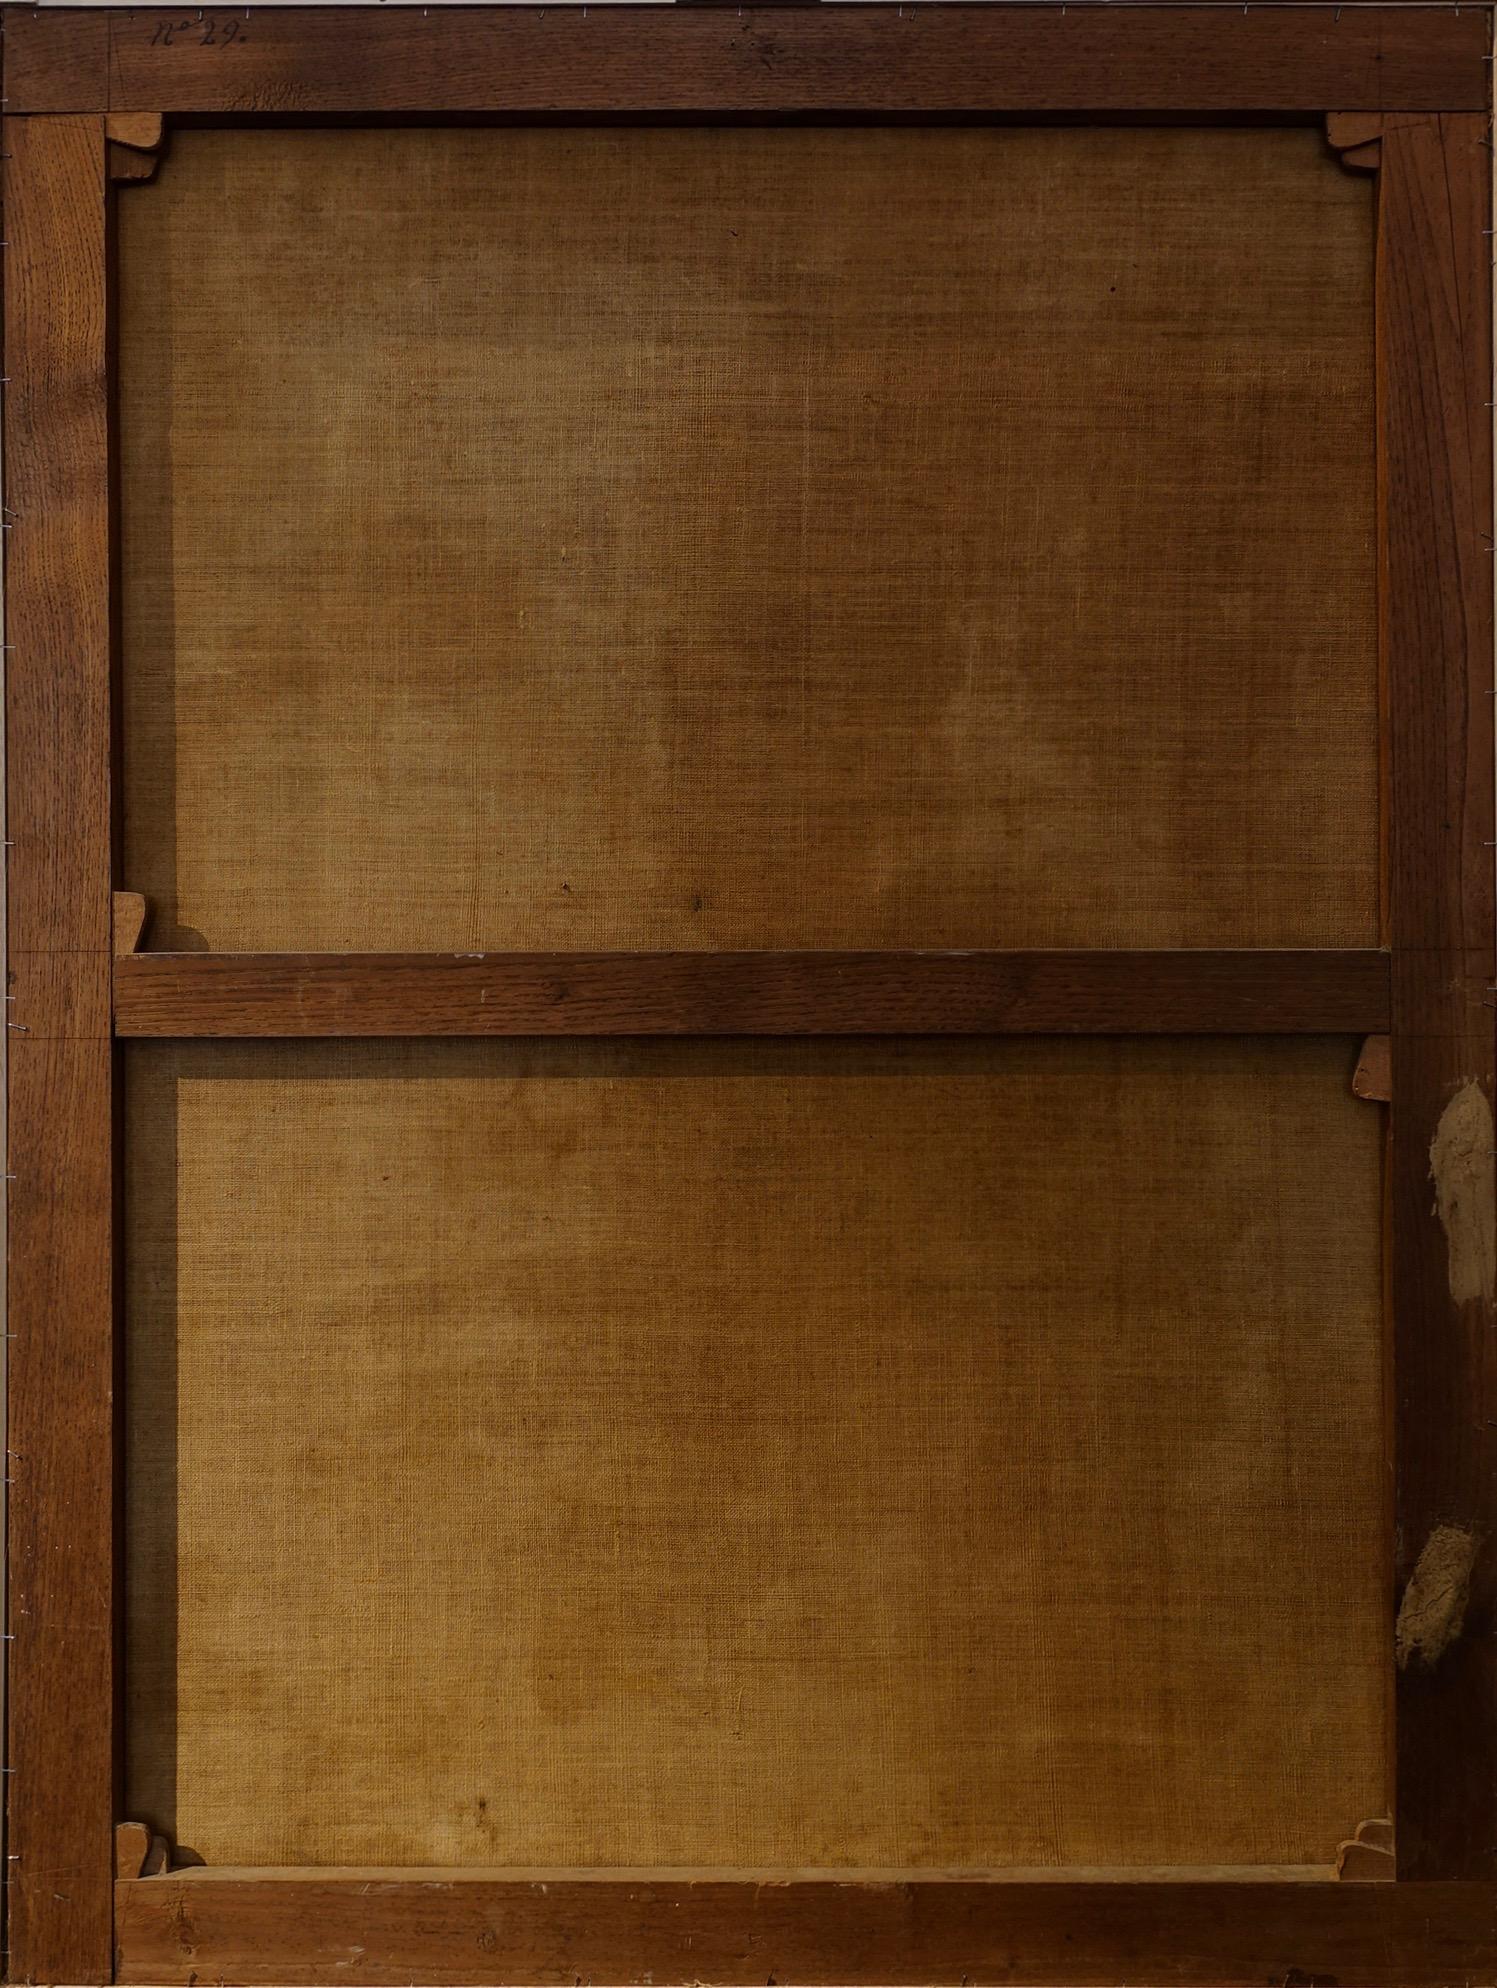 Renaissance Leandro Bassano, Portrait of a Savant For Sale